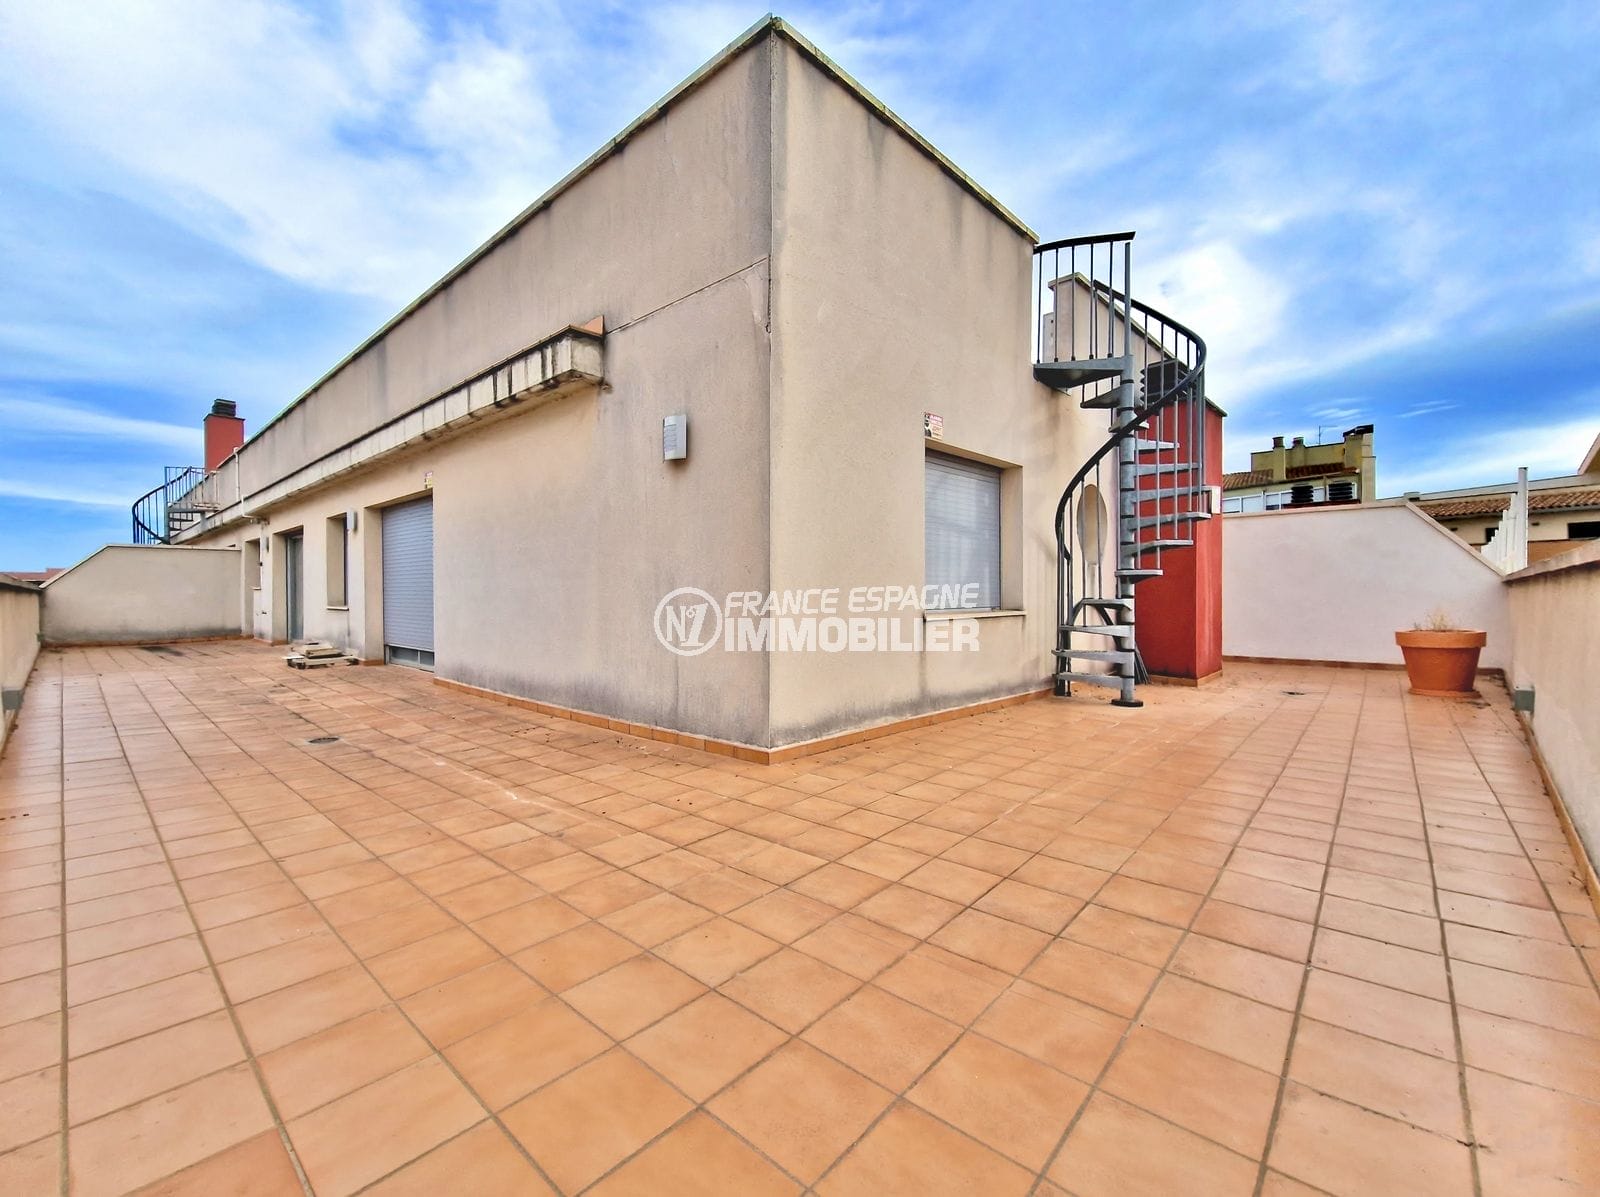 Figueres – atico 3 chambres terrasse 77 m², parking privé sous-sol